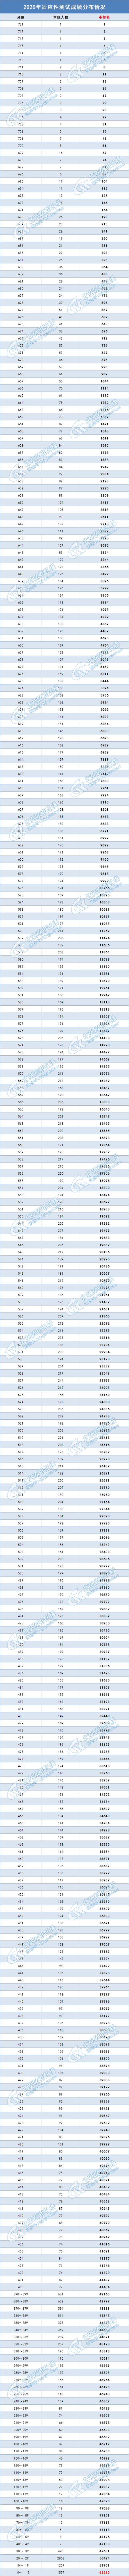 2020北京高考适应性测试一分一段表